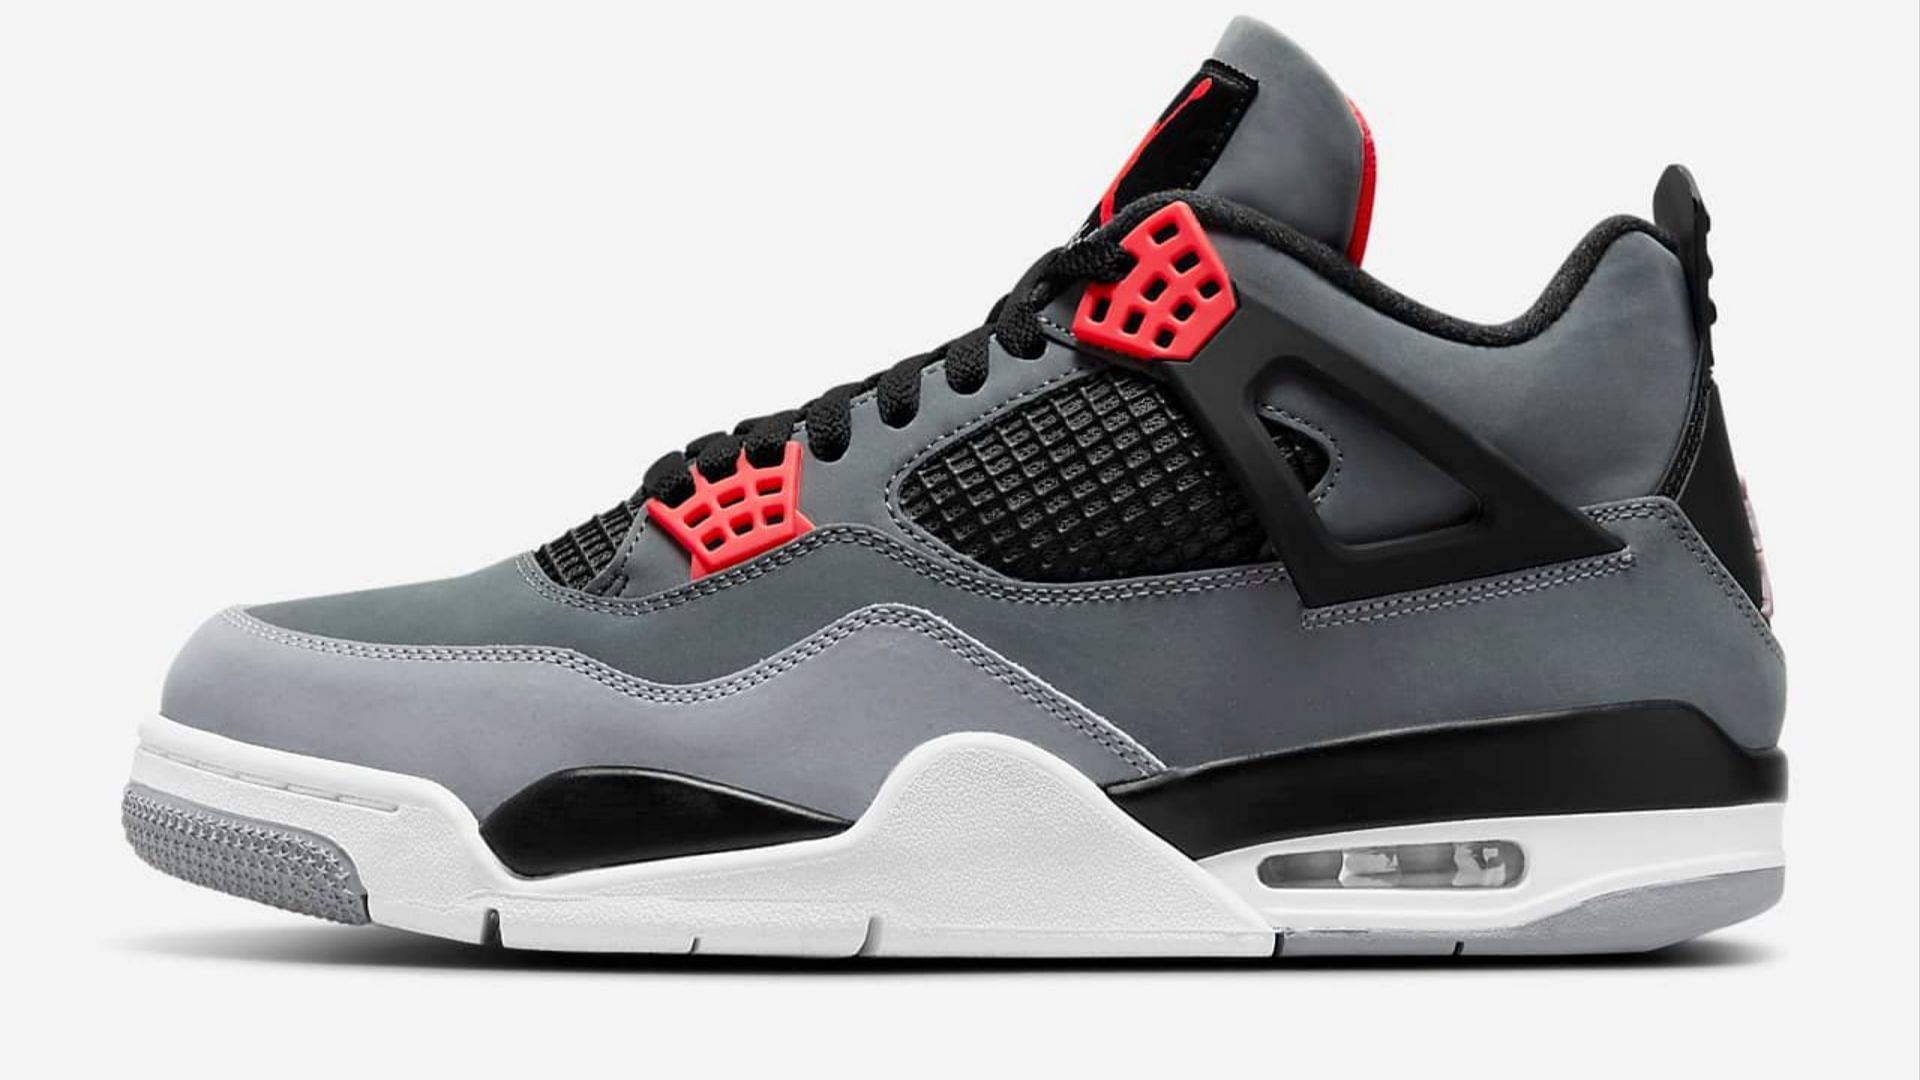 Air Jordan 4 (Image via Nike)